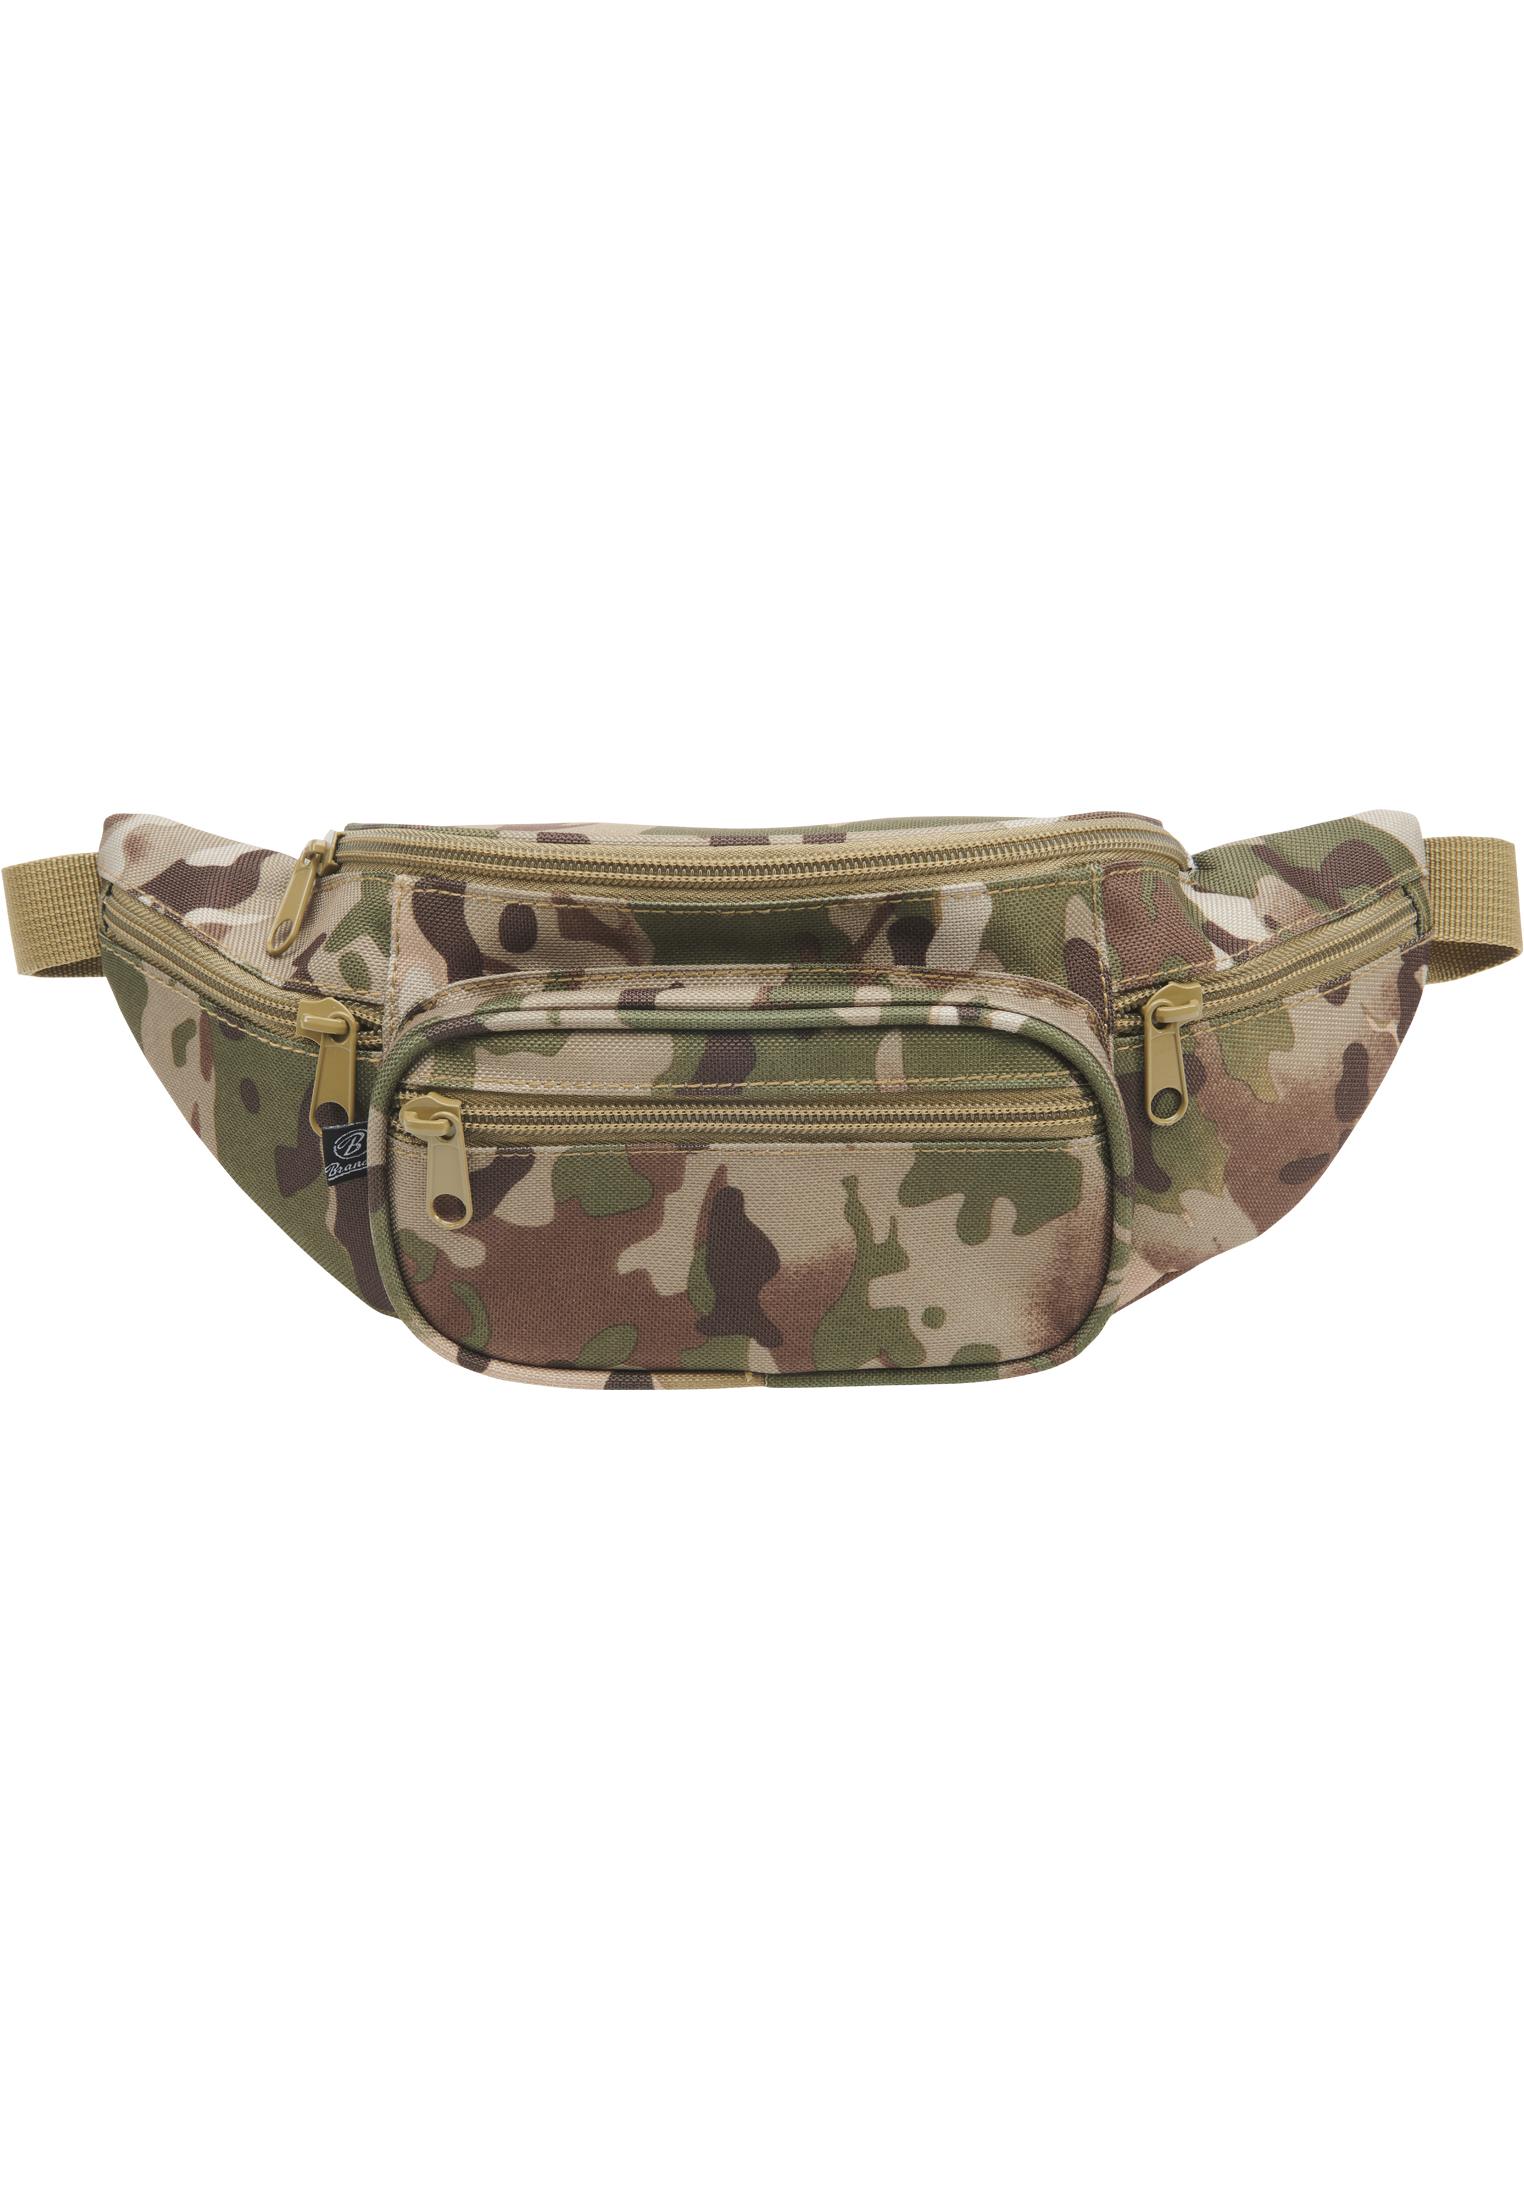 Taschen Pocket Hip Bag in Farbe tactical camo